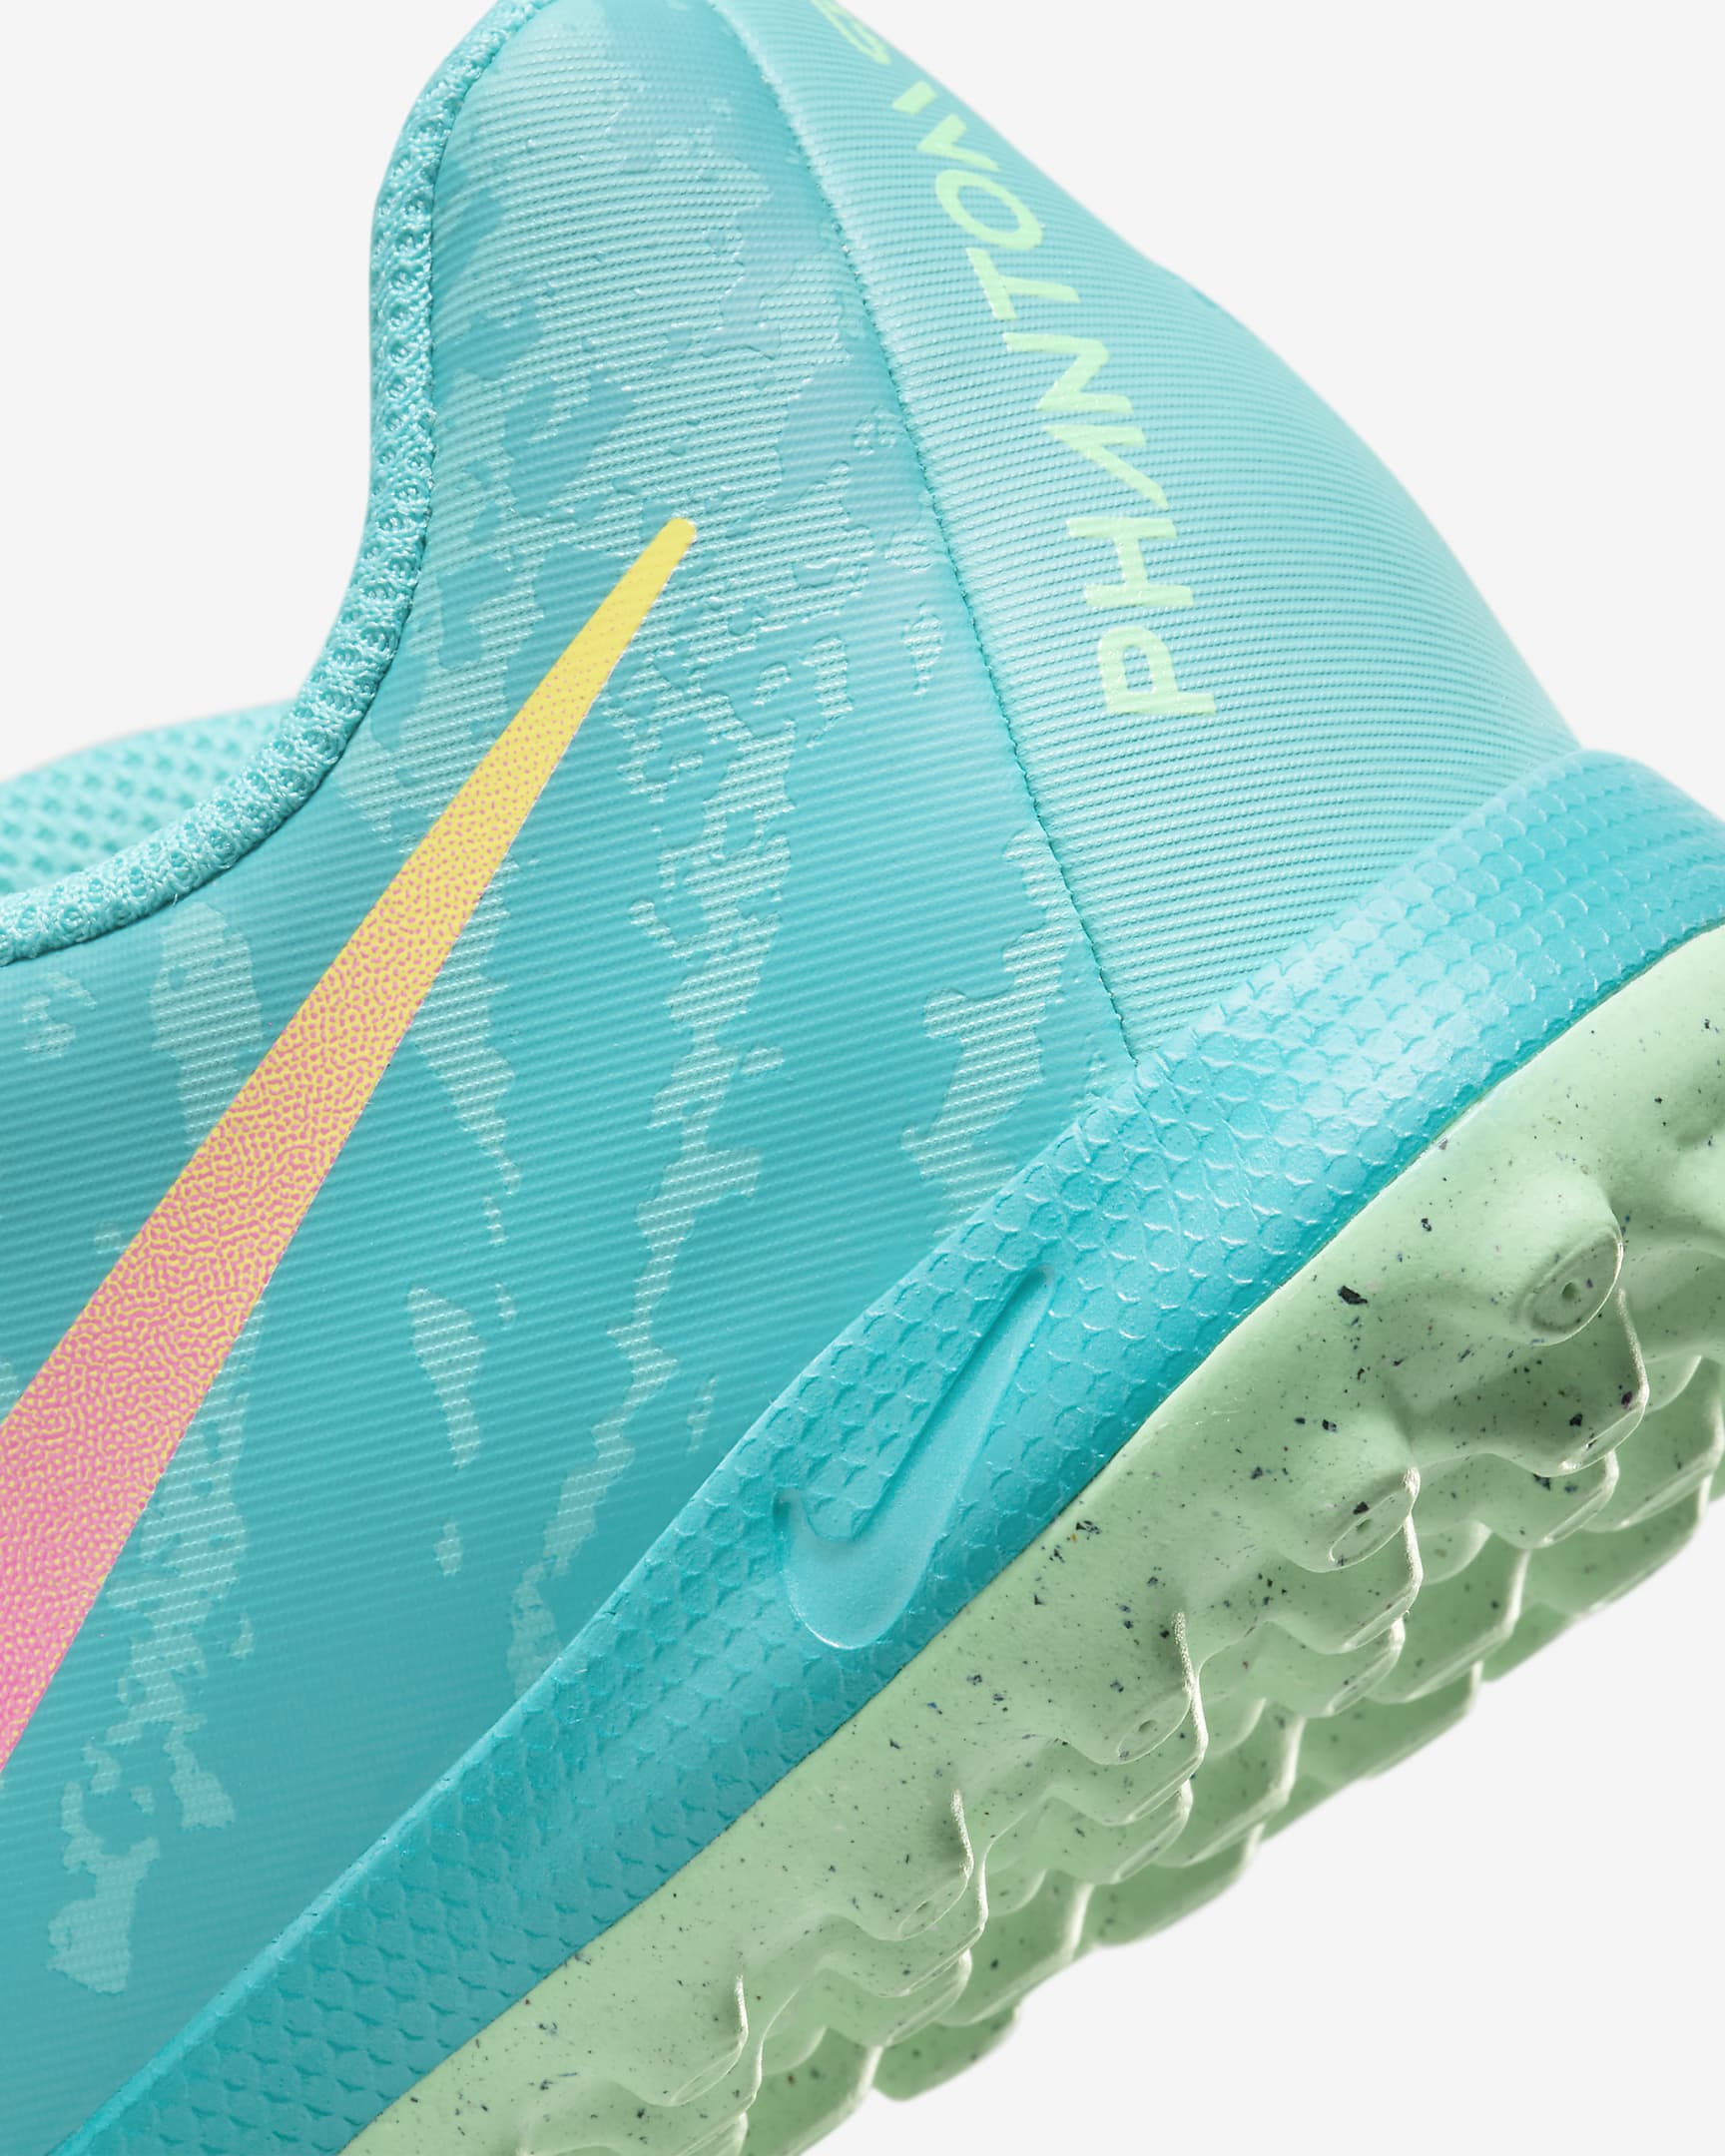 Chaussure de foot basse pour surface synthétique Nike Jr. Phantom GX 2 Academy LV8 pour enfant/ado - Green Glow/Noir